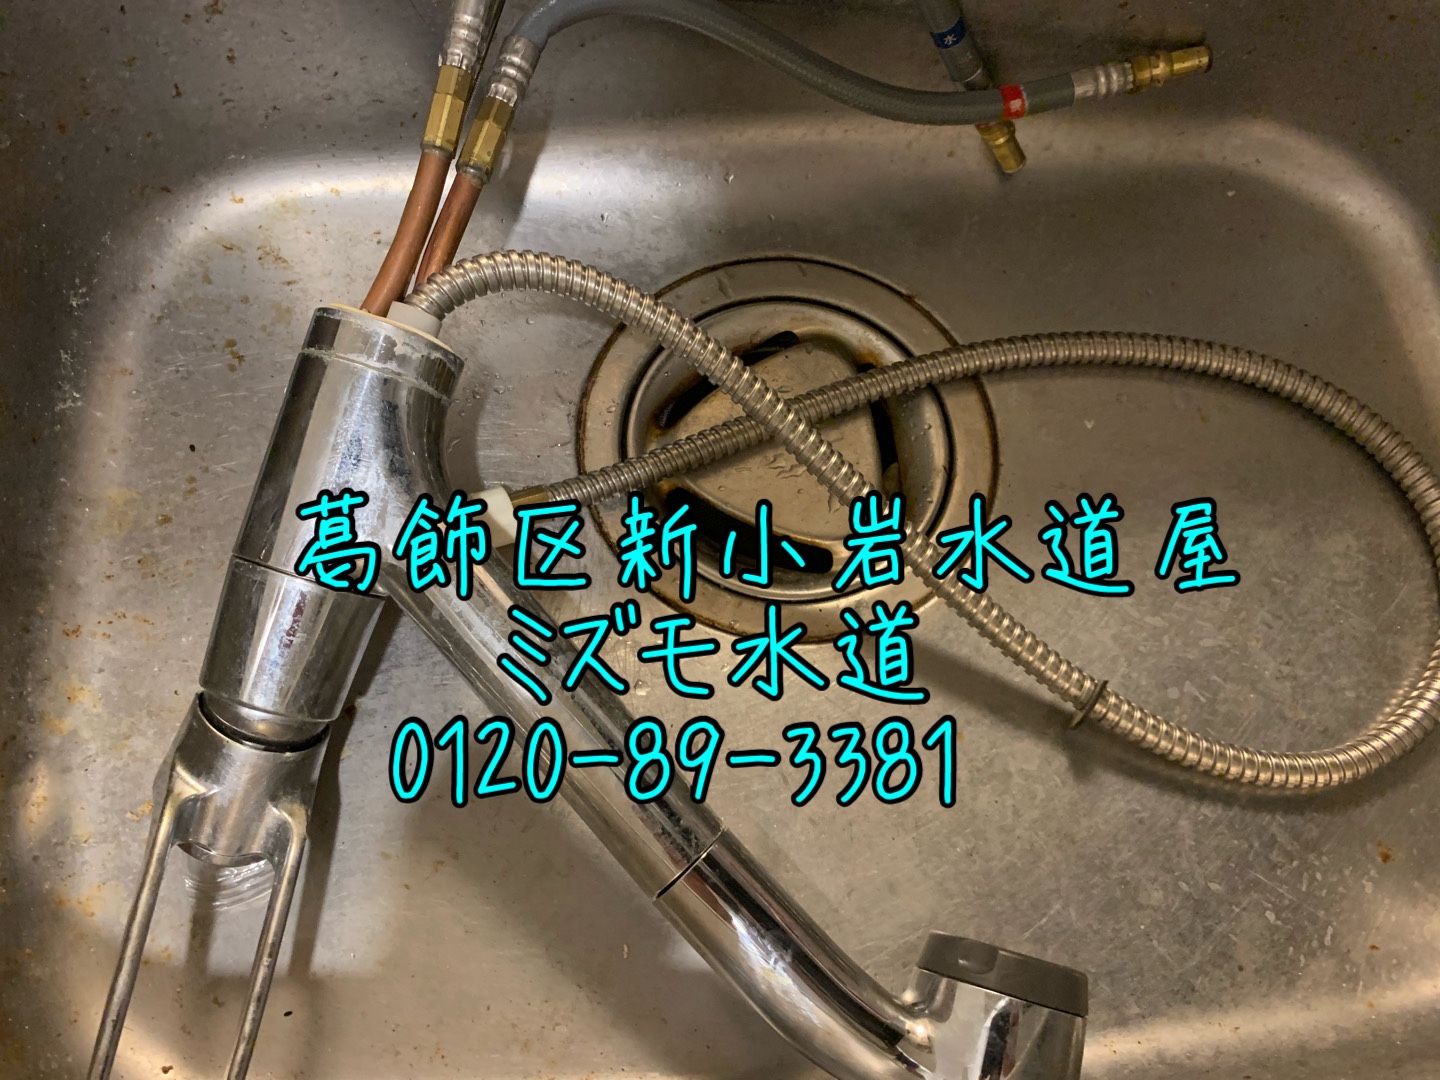 台所水漏れ蛇口交換